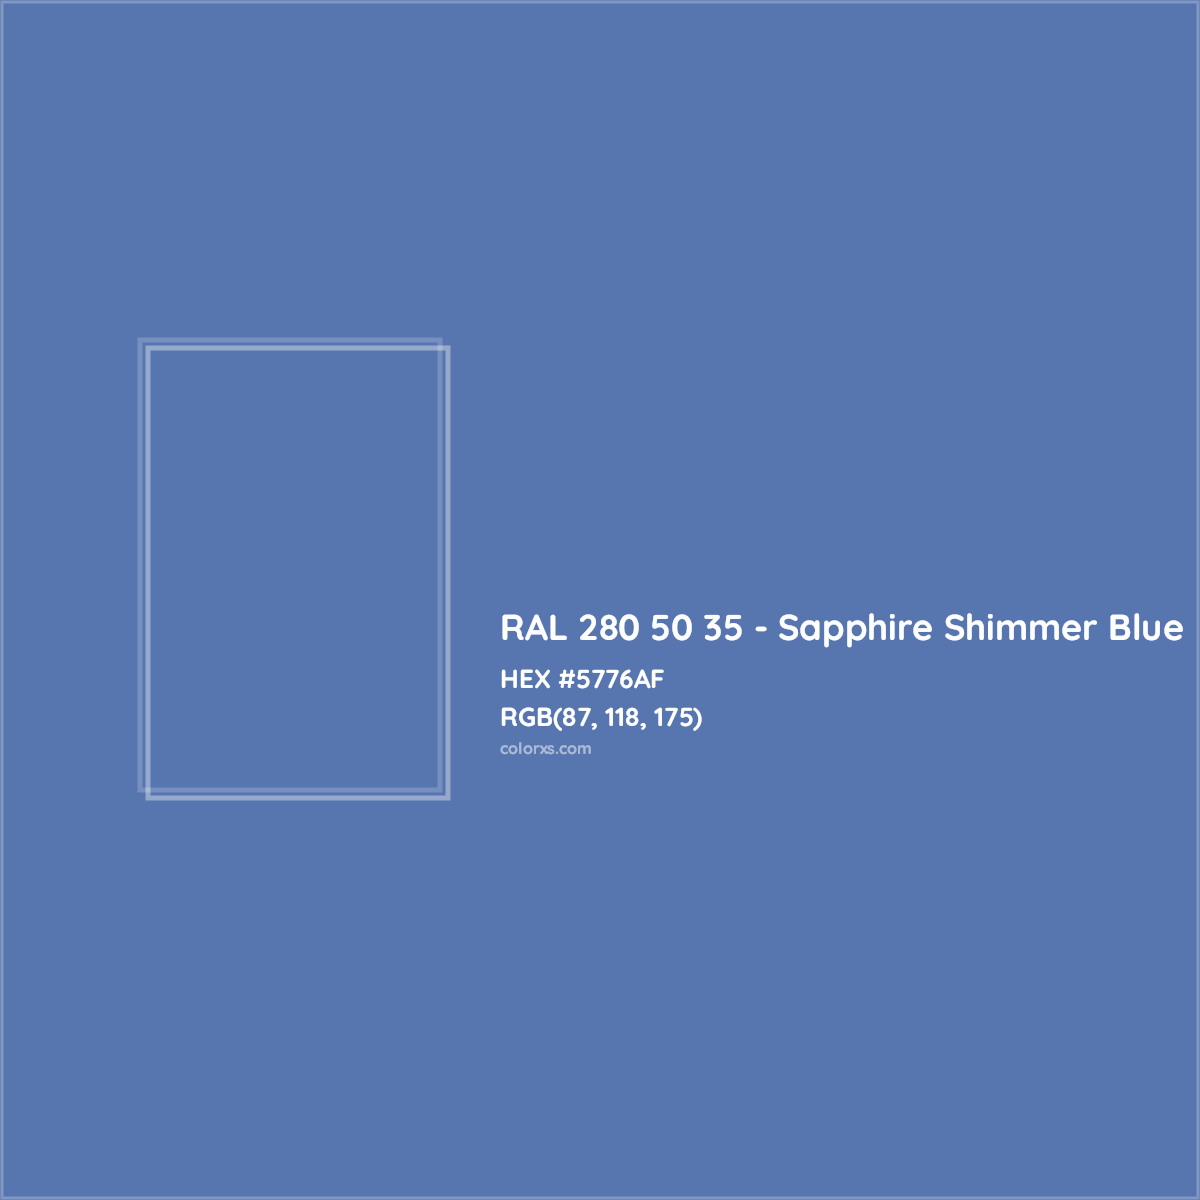 HEX #5776AF RAL 280 50 35 - Sapphire Shimmer Blue CMS RAL Design - Color Code